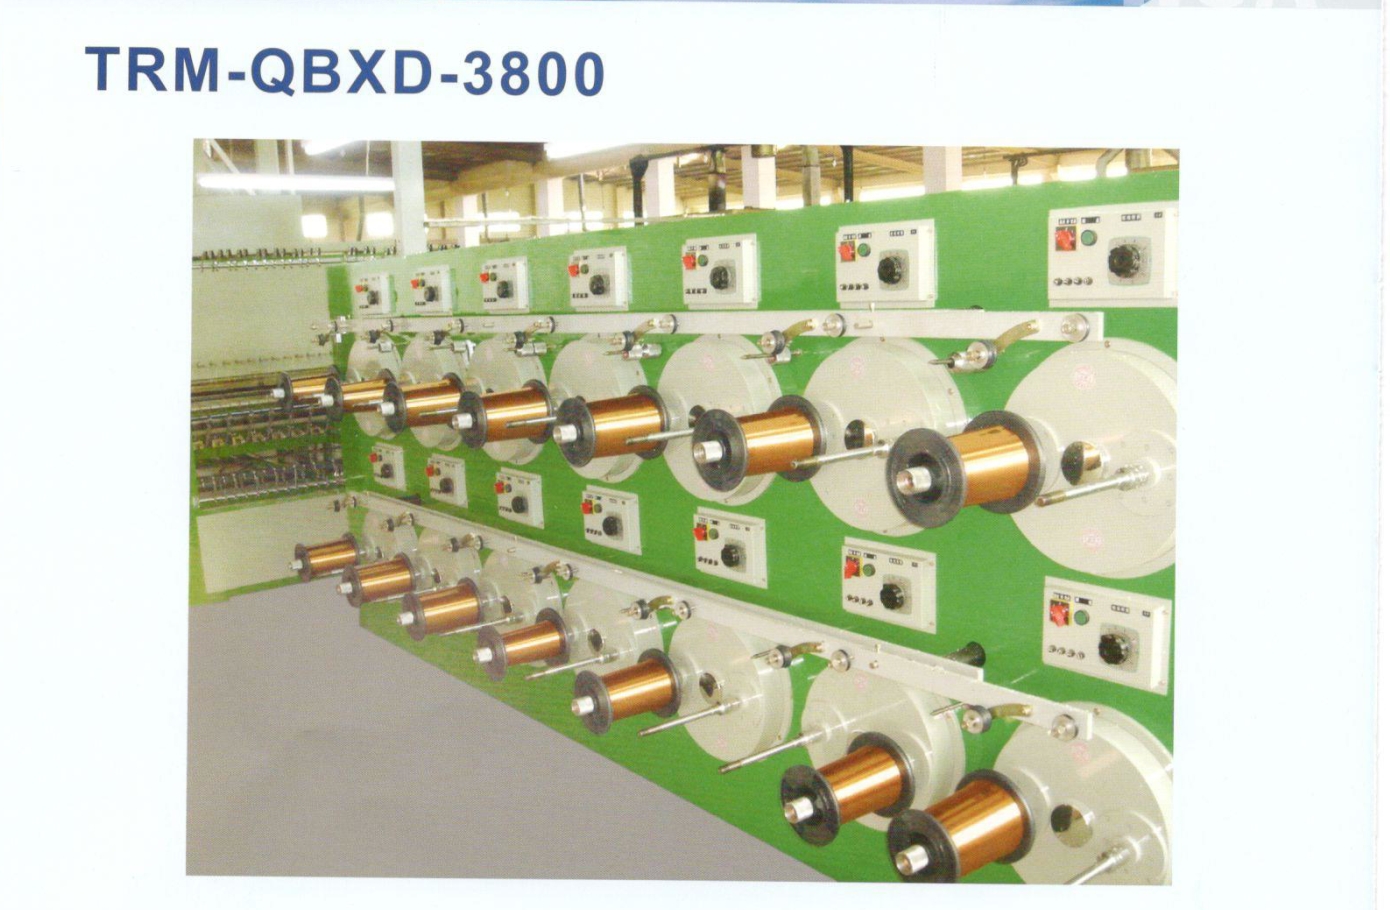 THM-QBXD-3800